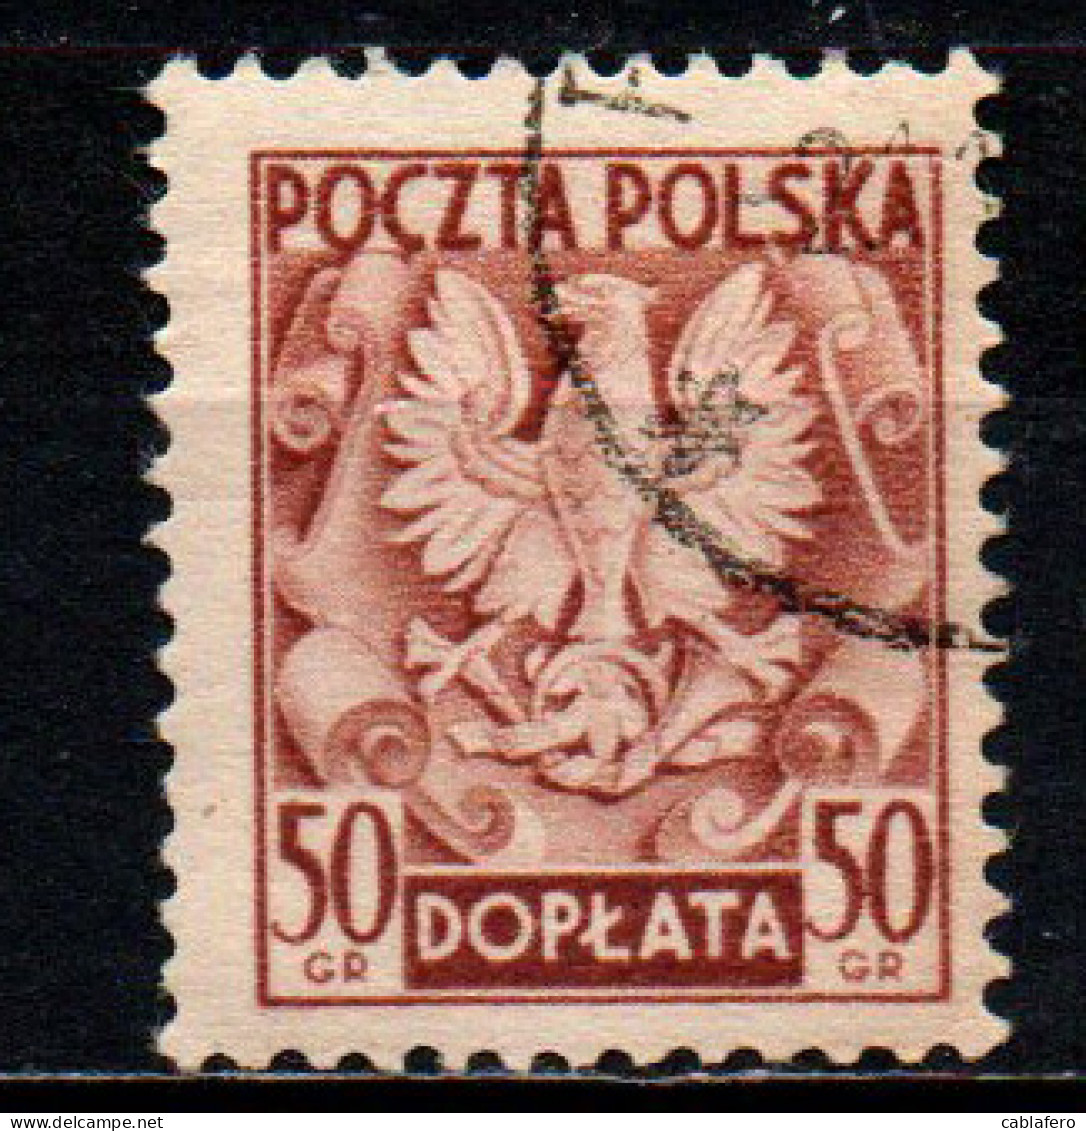 POLONIA - 1950 - Polish Eagle - USATO - Taxe